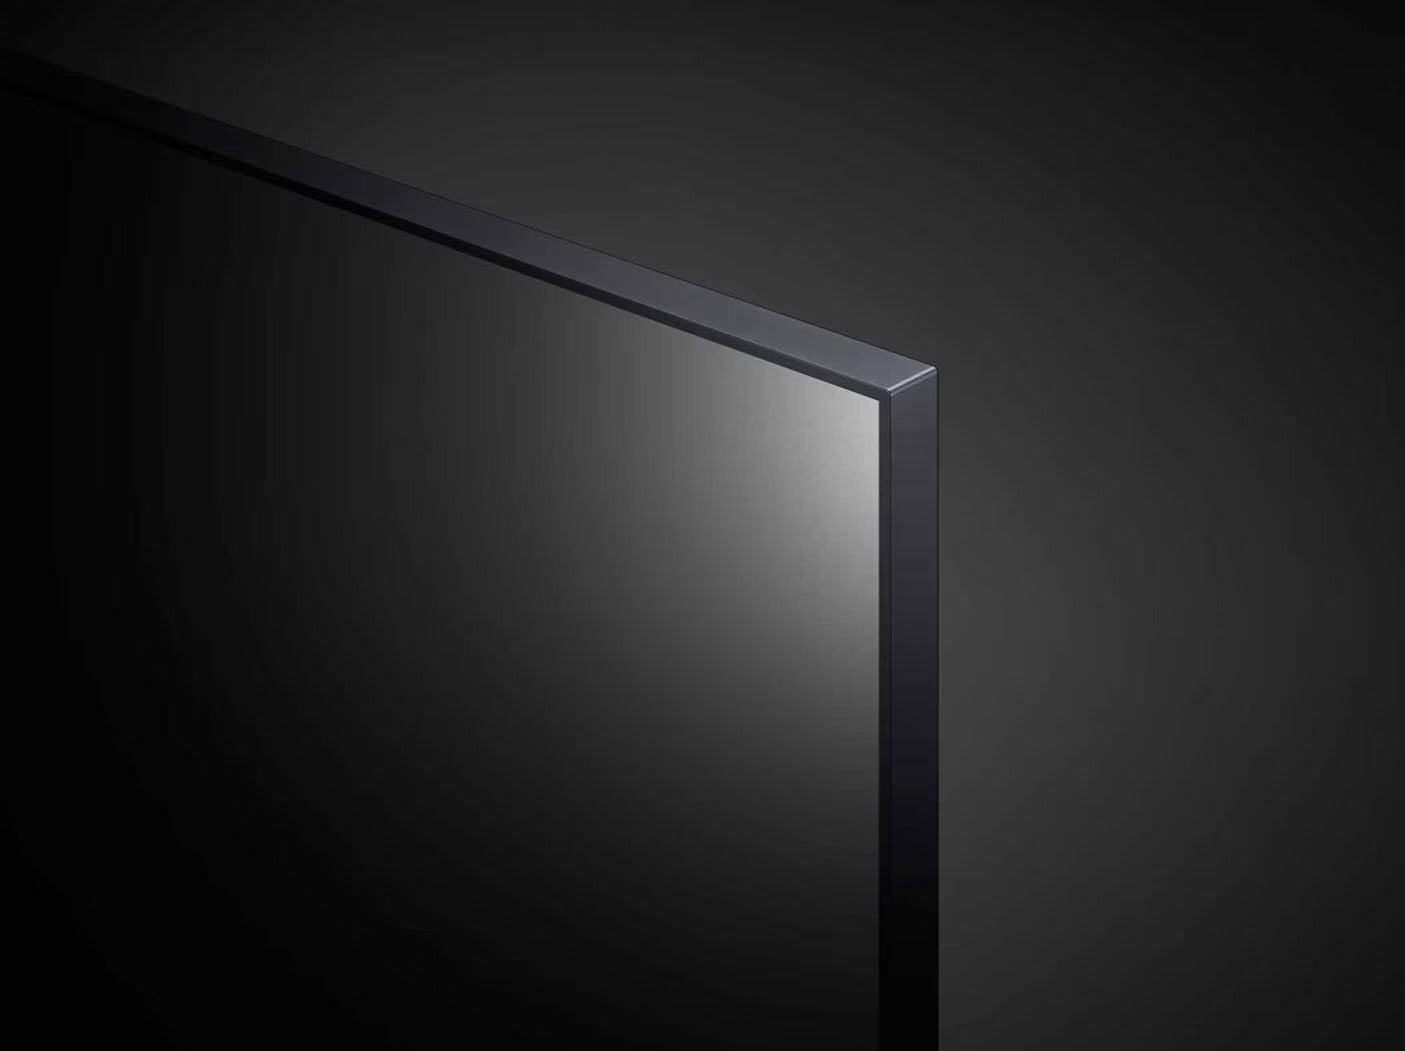 LG 55UP7700 4K Smart TV jobb felső keretre közelítve.